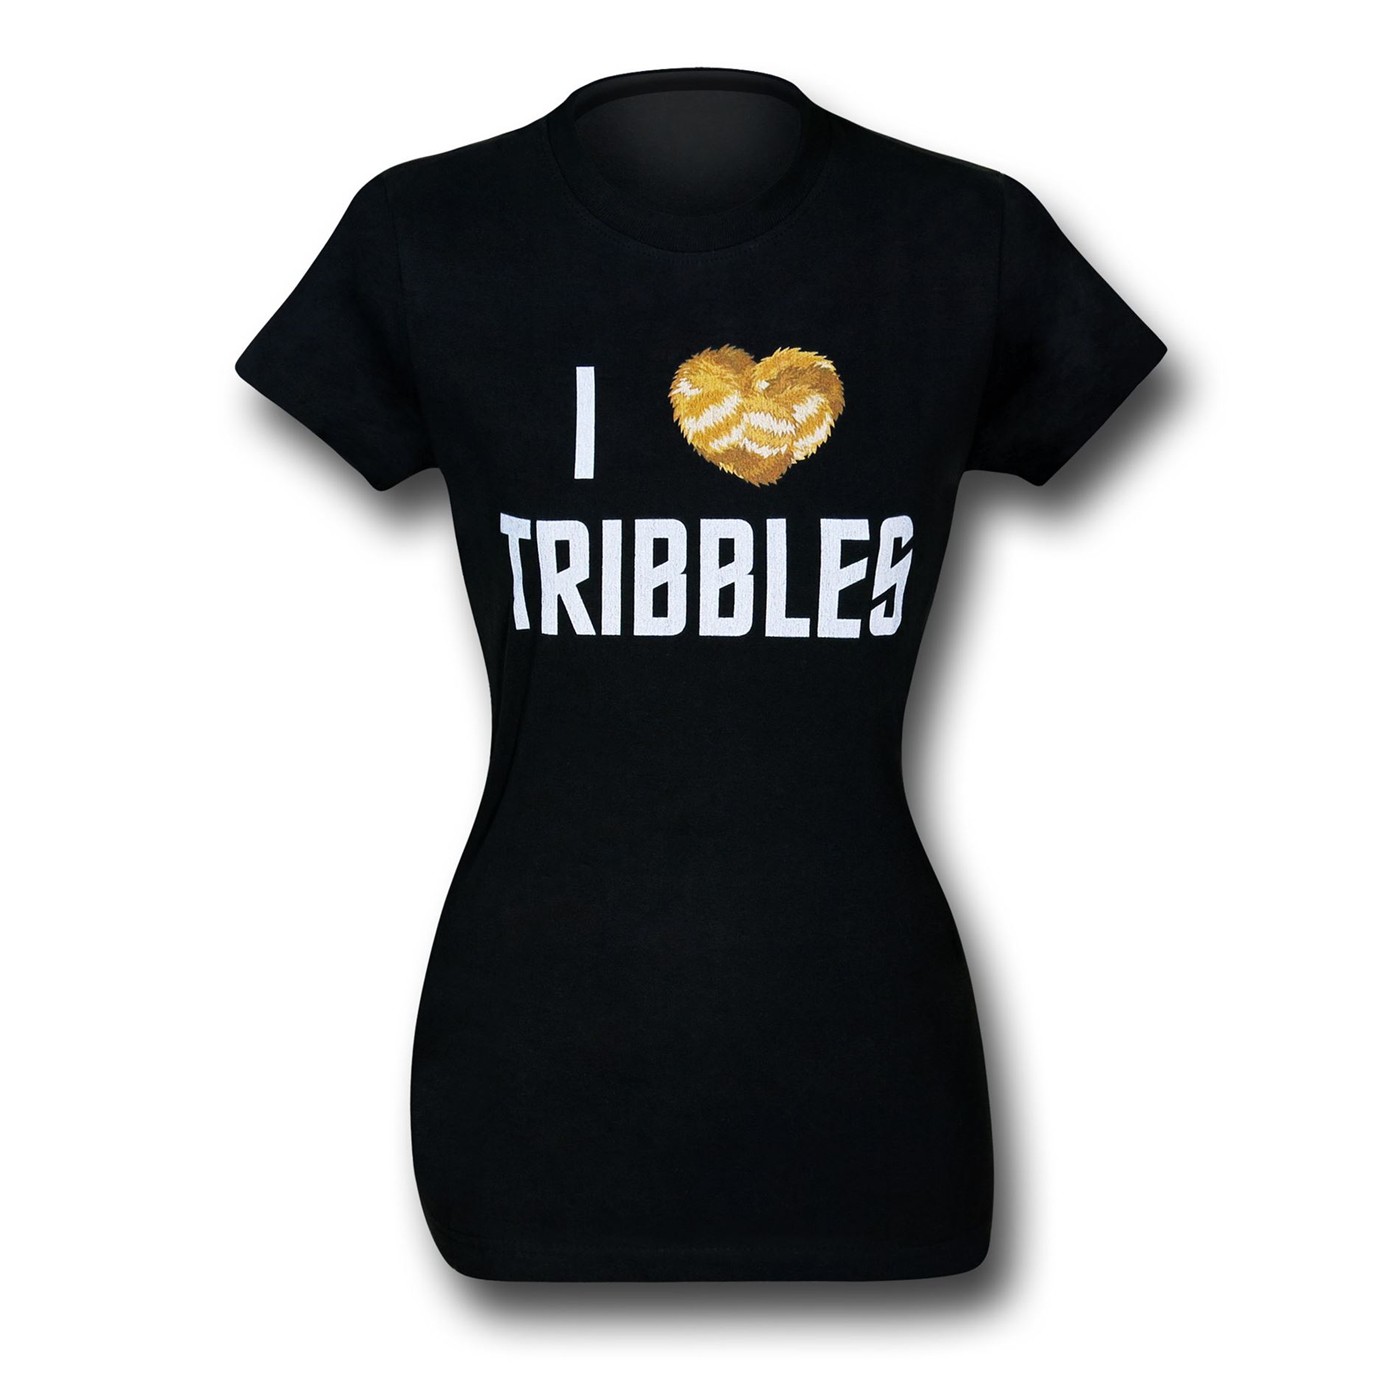 Star Trek Tribble Women's Black T-Shirt